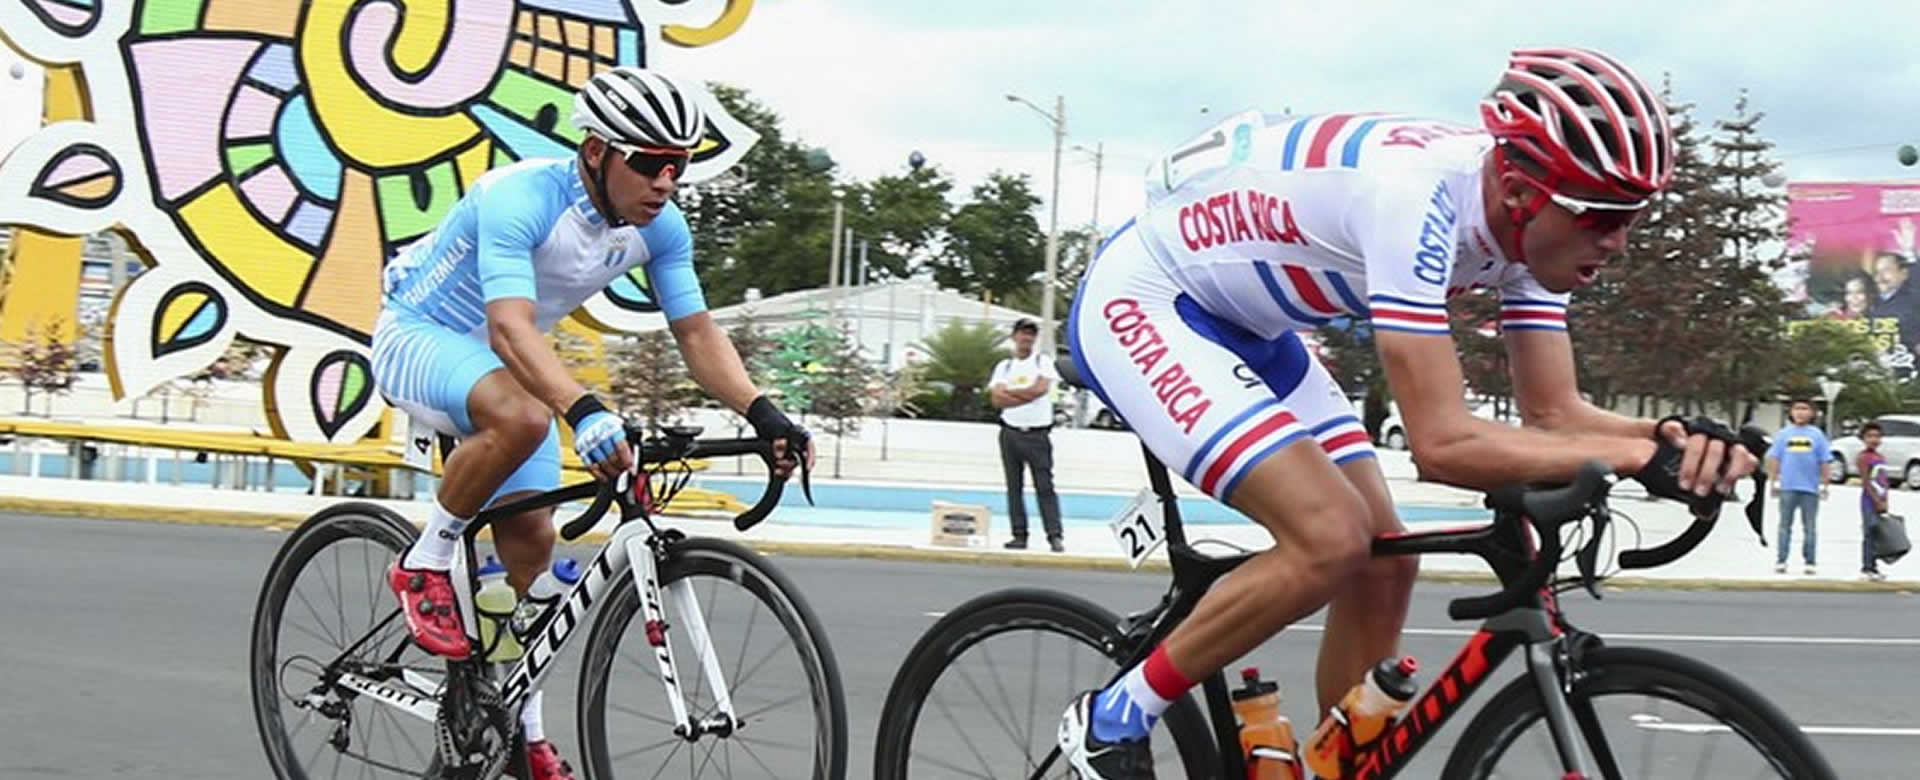 Costa Rica se lleva el oro en Ciclismo Masculino